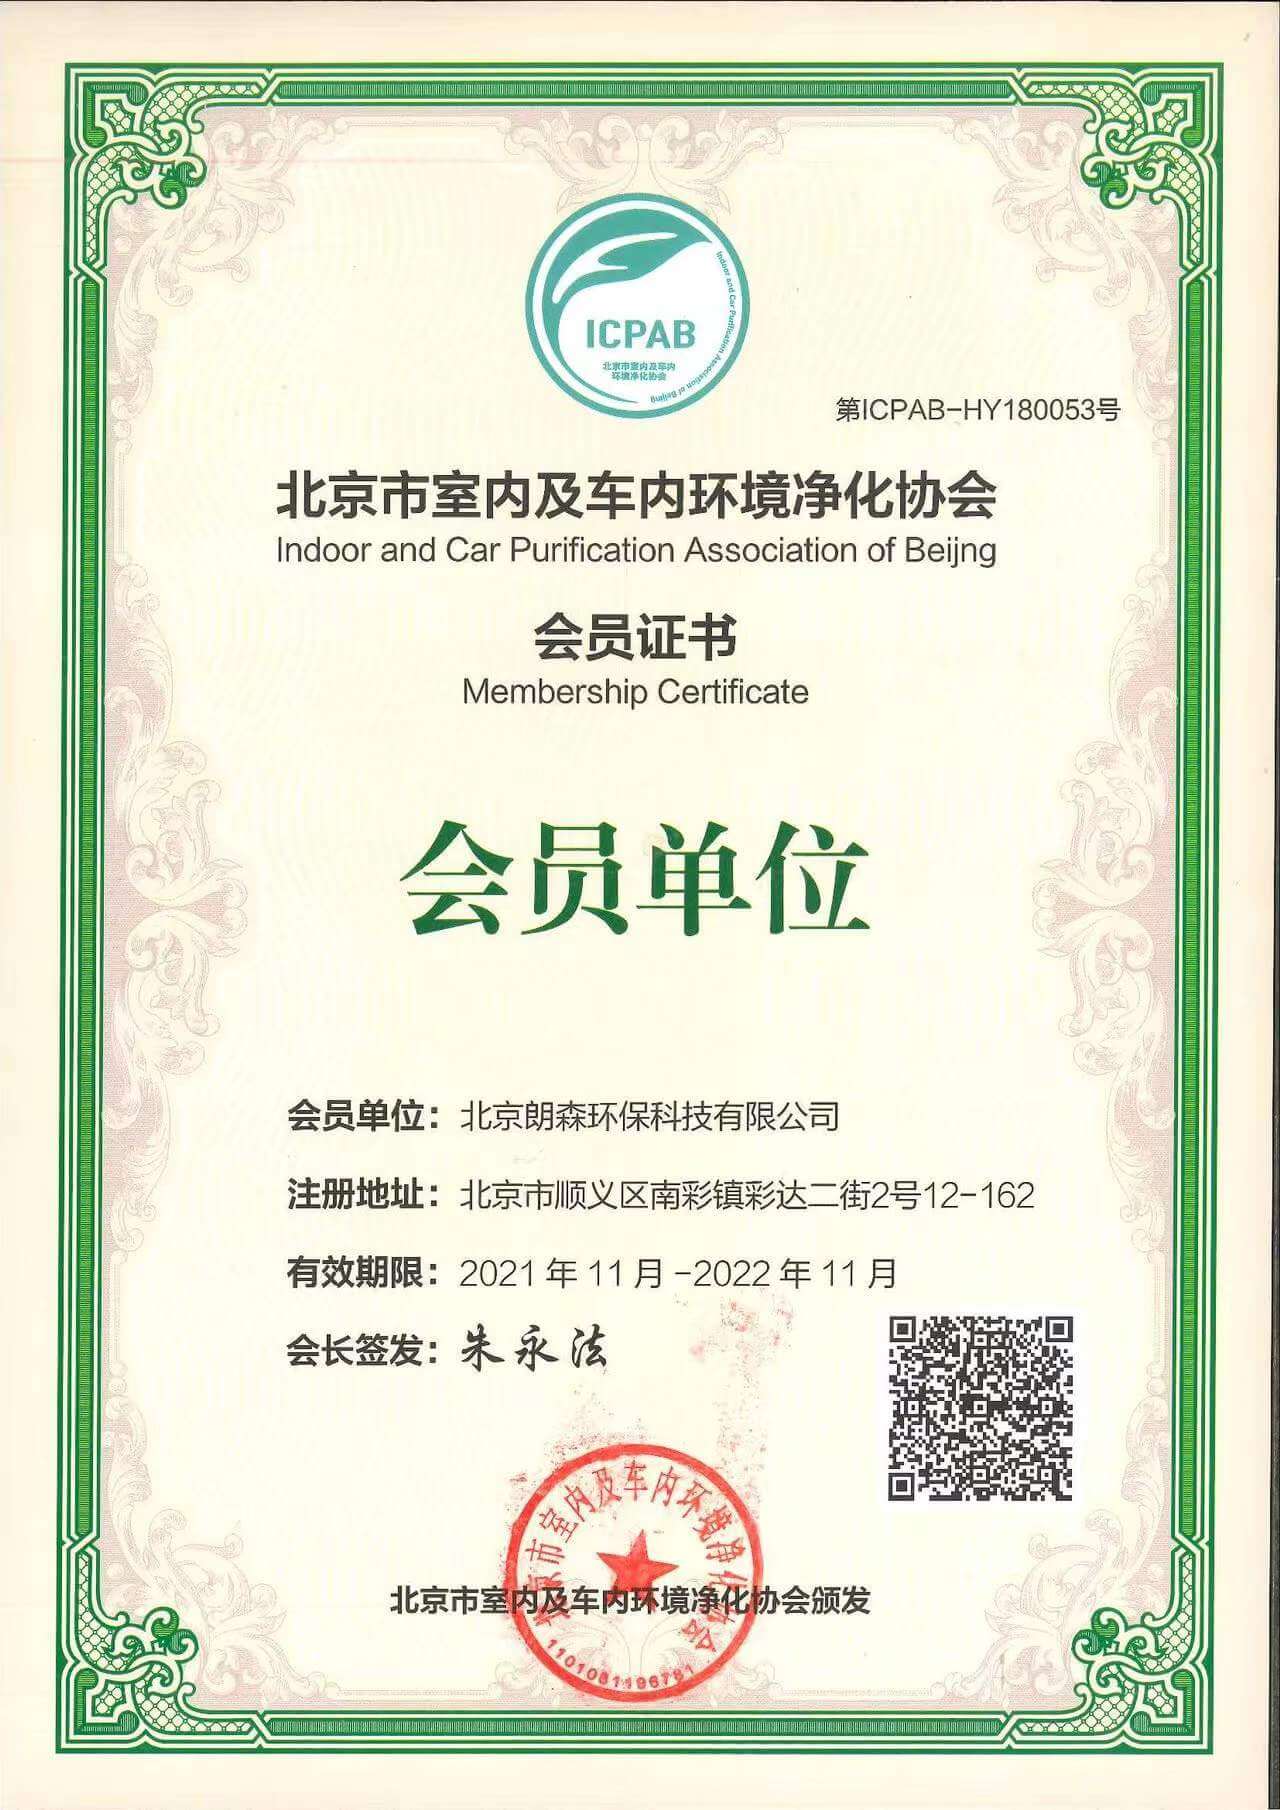 朗森环保科技——北京市室内及车内环境净化协会证书